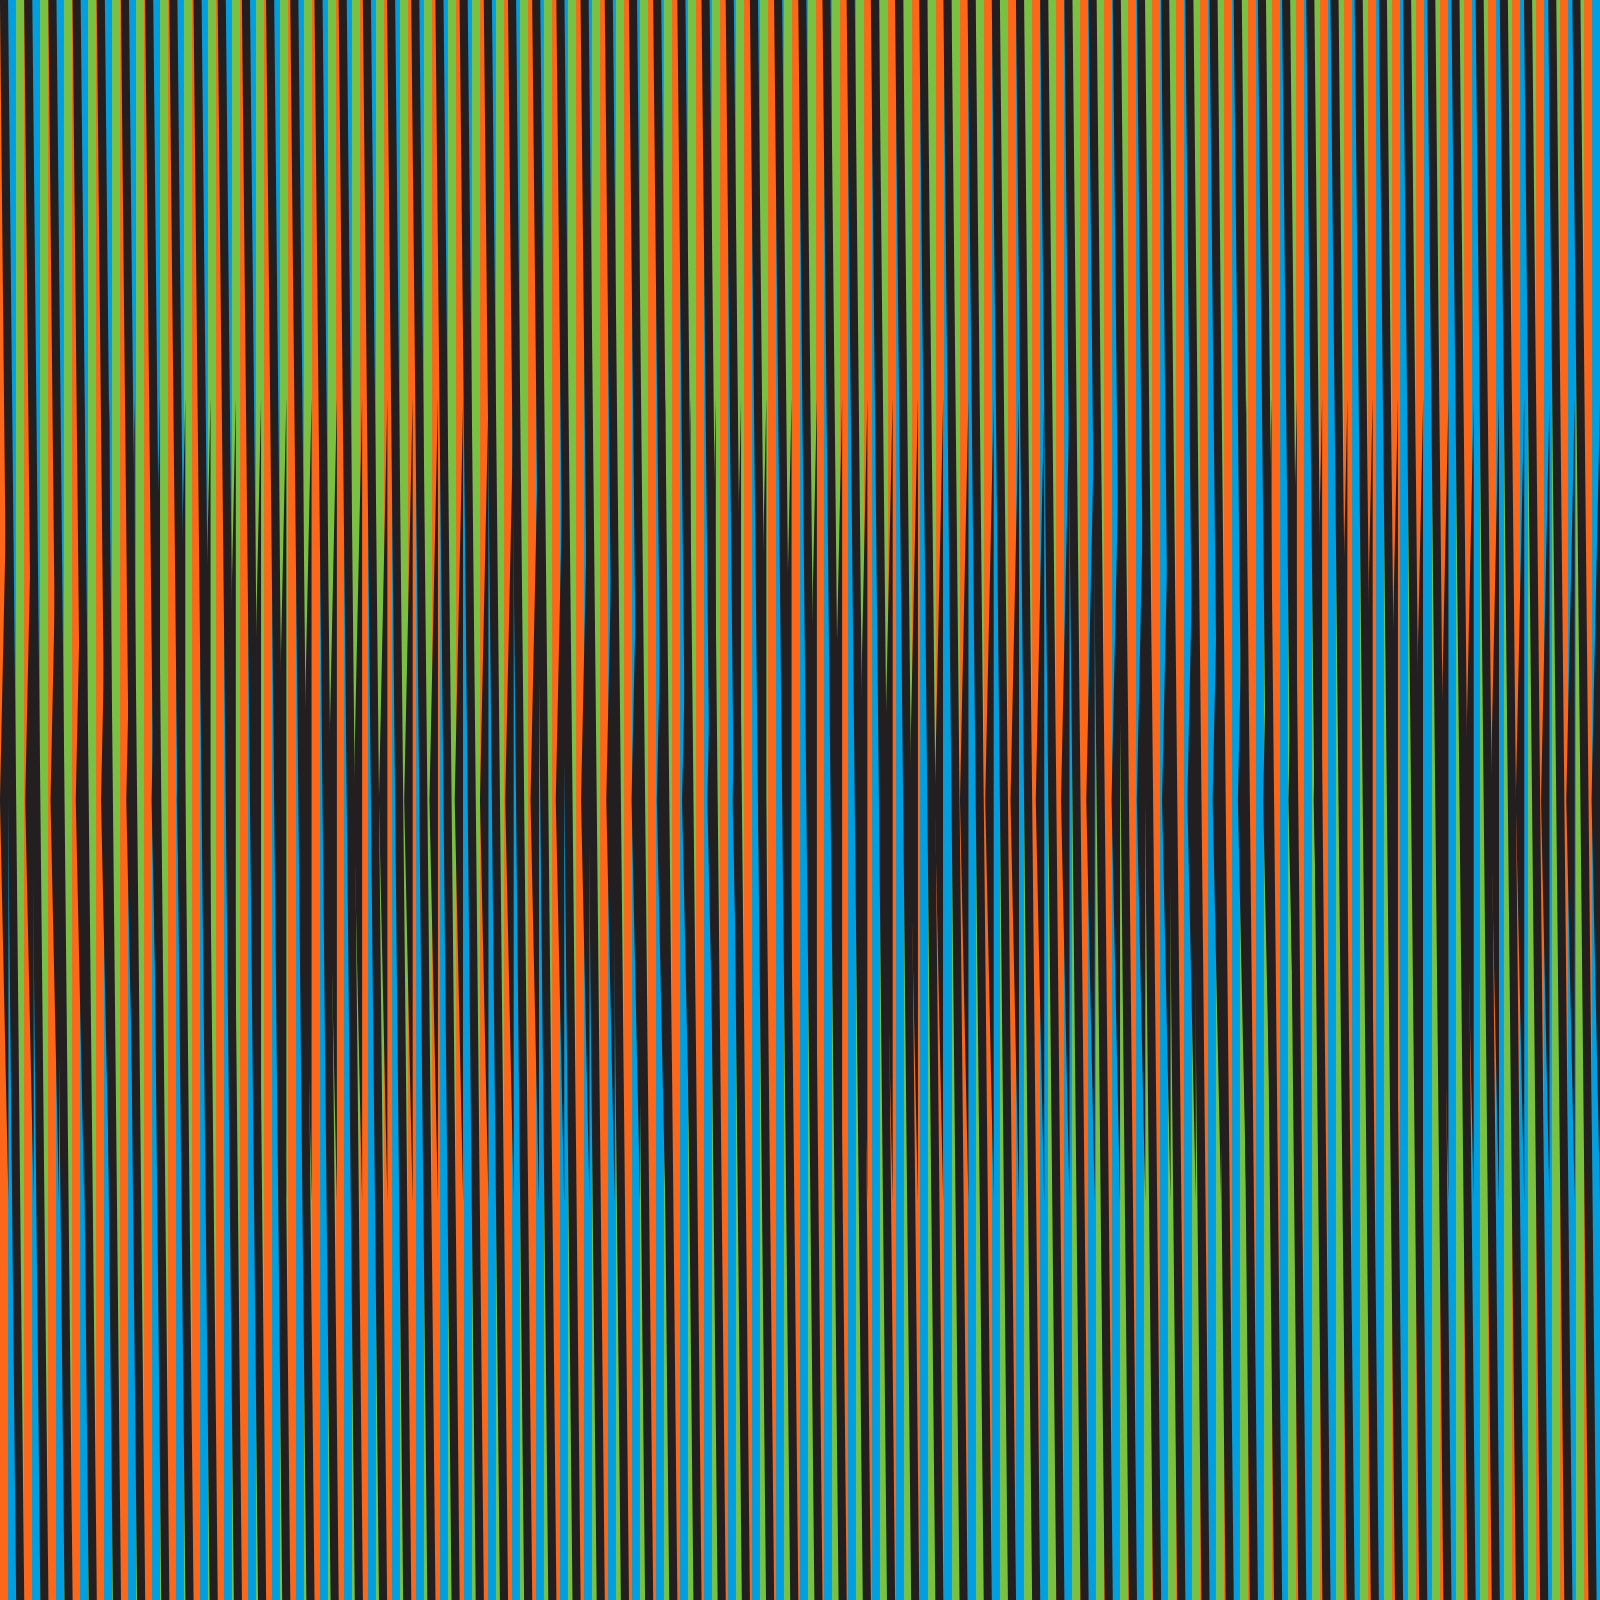 Esta obra de Carlos Cruz-Diez se titula 'Induction chromatique a double fréquence RVB 3' (París, 2014), 100 x 100 cm.